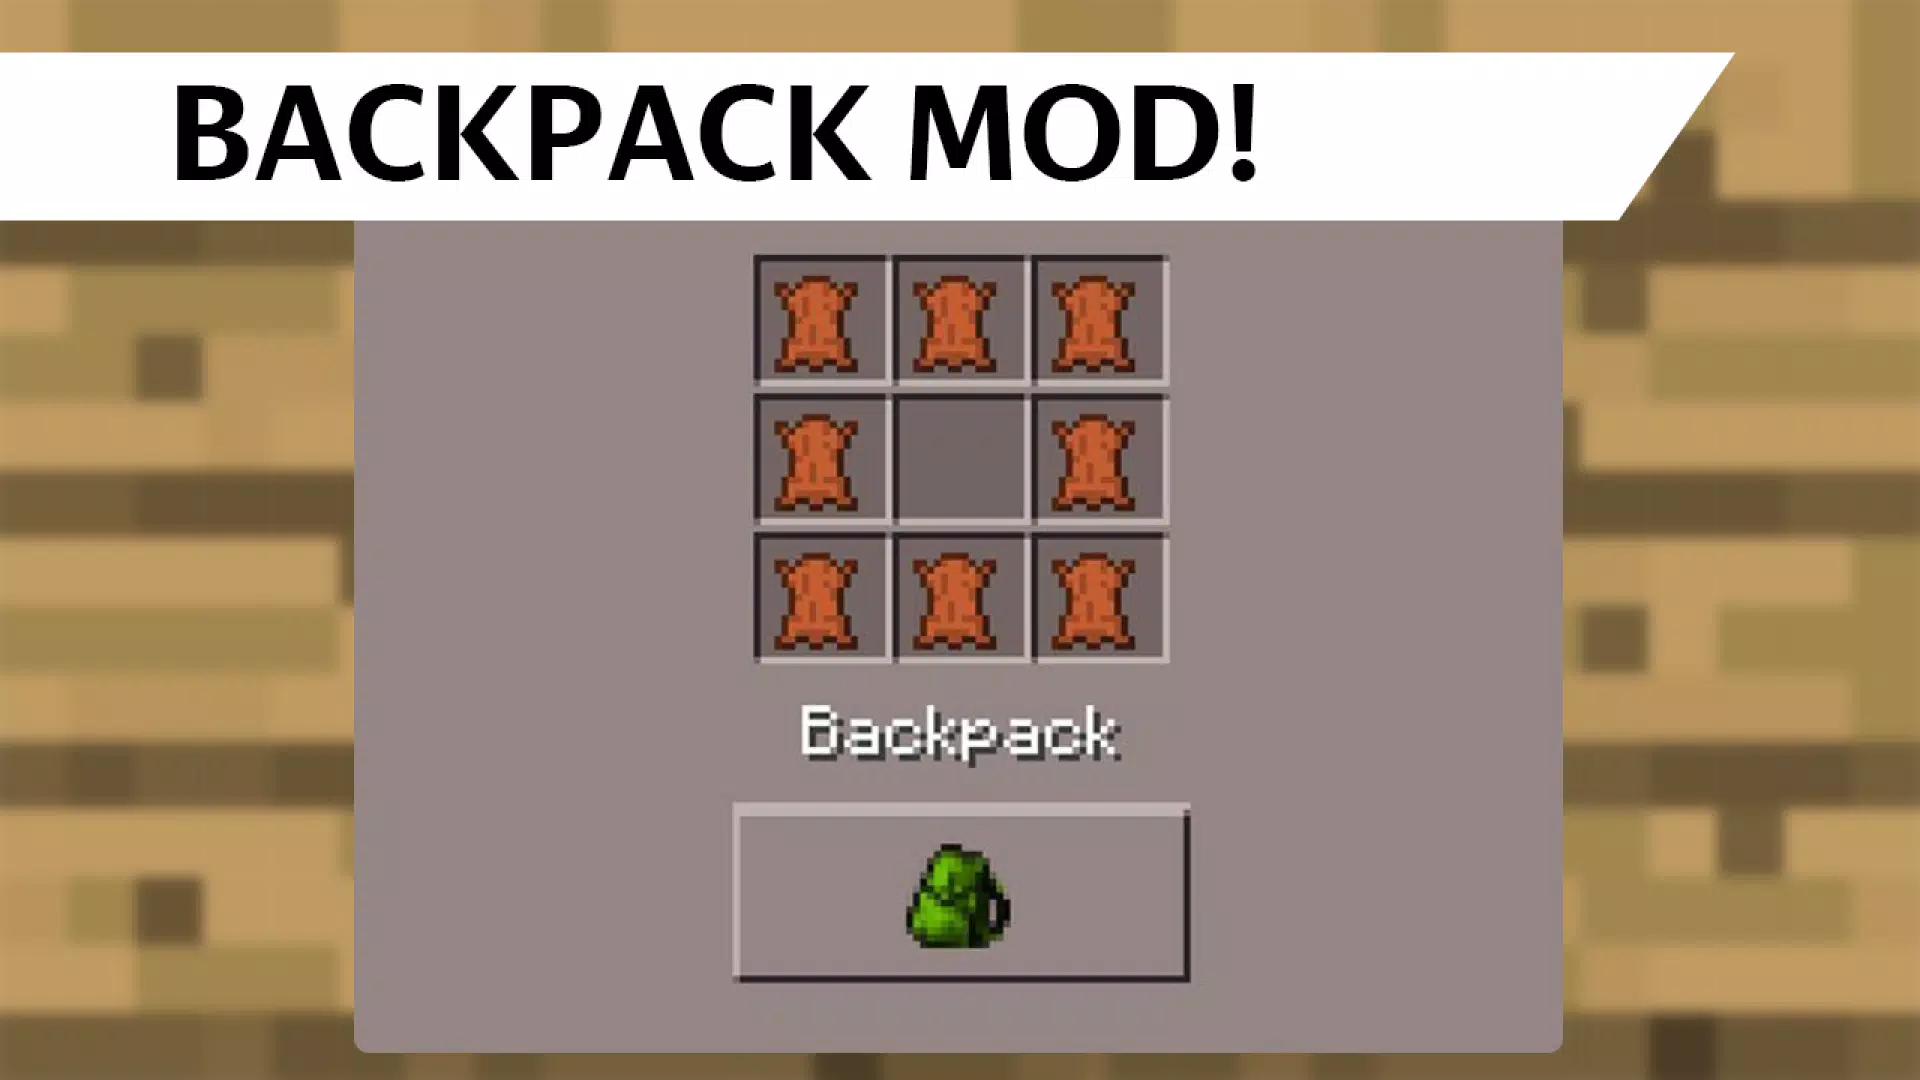 Descarga de APK de Mochilas Mod para Minecraft para Android